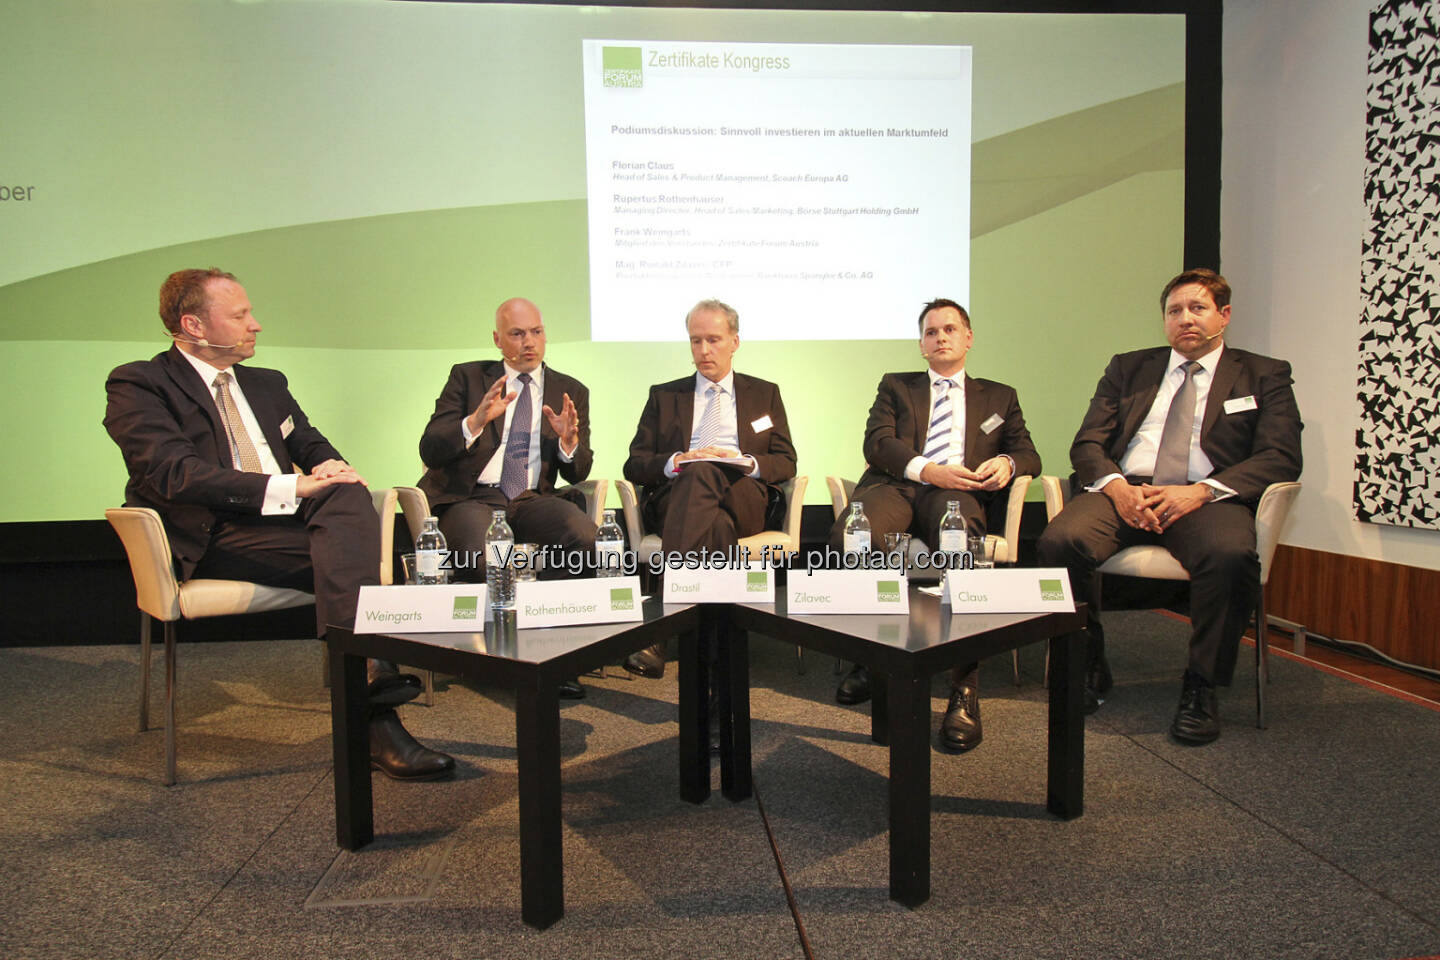 Roundtable: Frank Weingarts (UniCredit), Rupertus Rothenhäuser (Börse Stuttgart), Christian Drastil, Ronald Zilavec (Bankhaus Spängler), Florian Claus (Scoach)